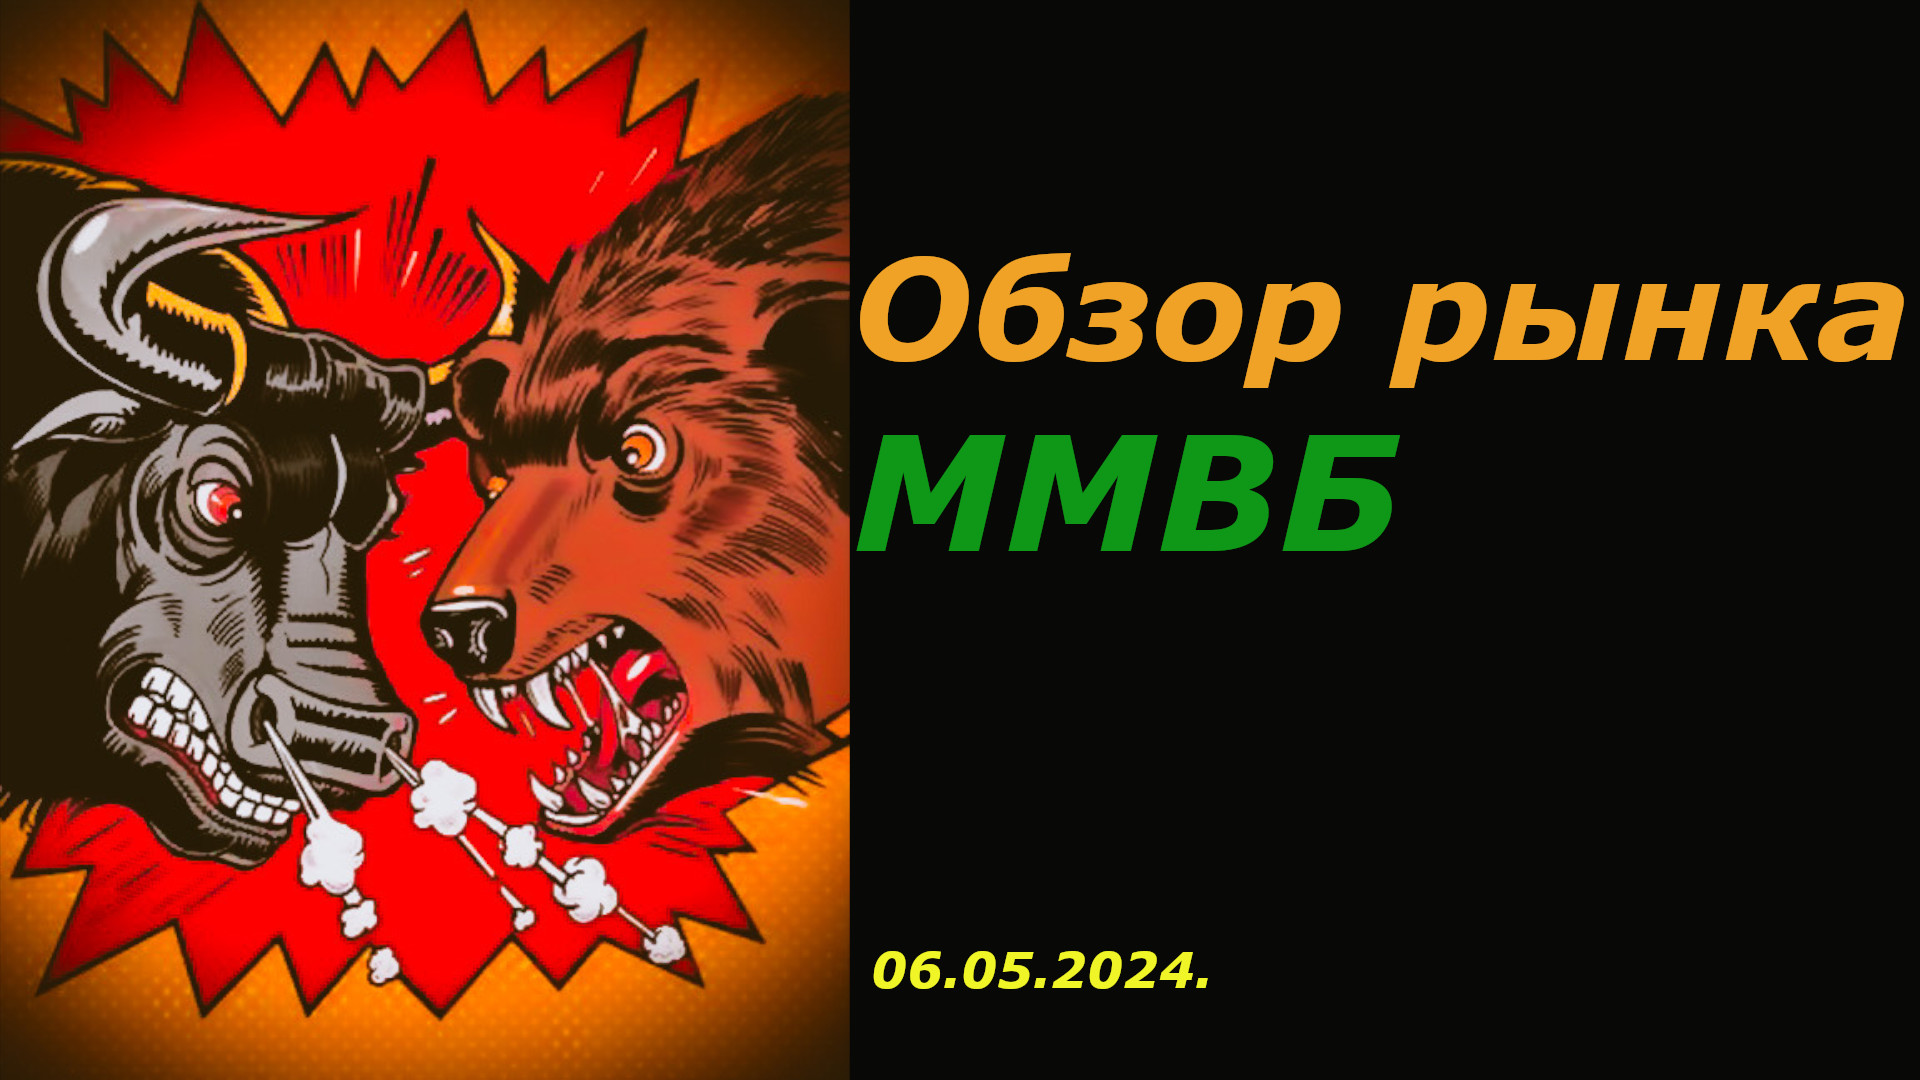 Обзор Рынка Акций ММВБ на 06.05.2024 г.